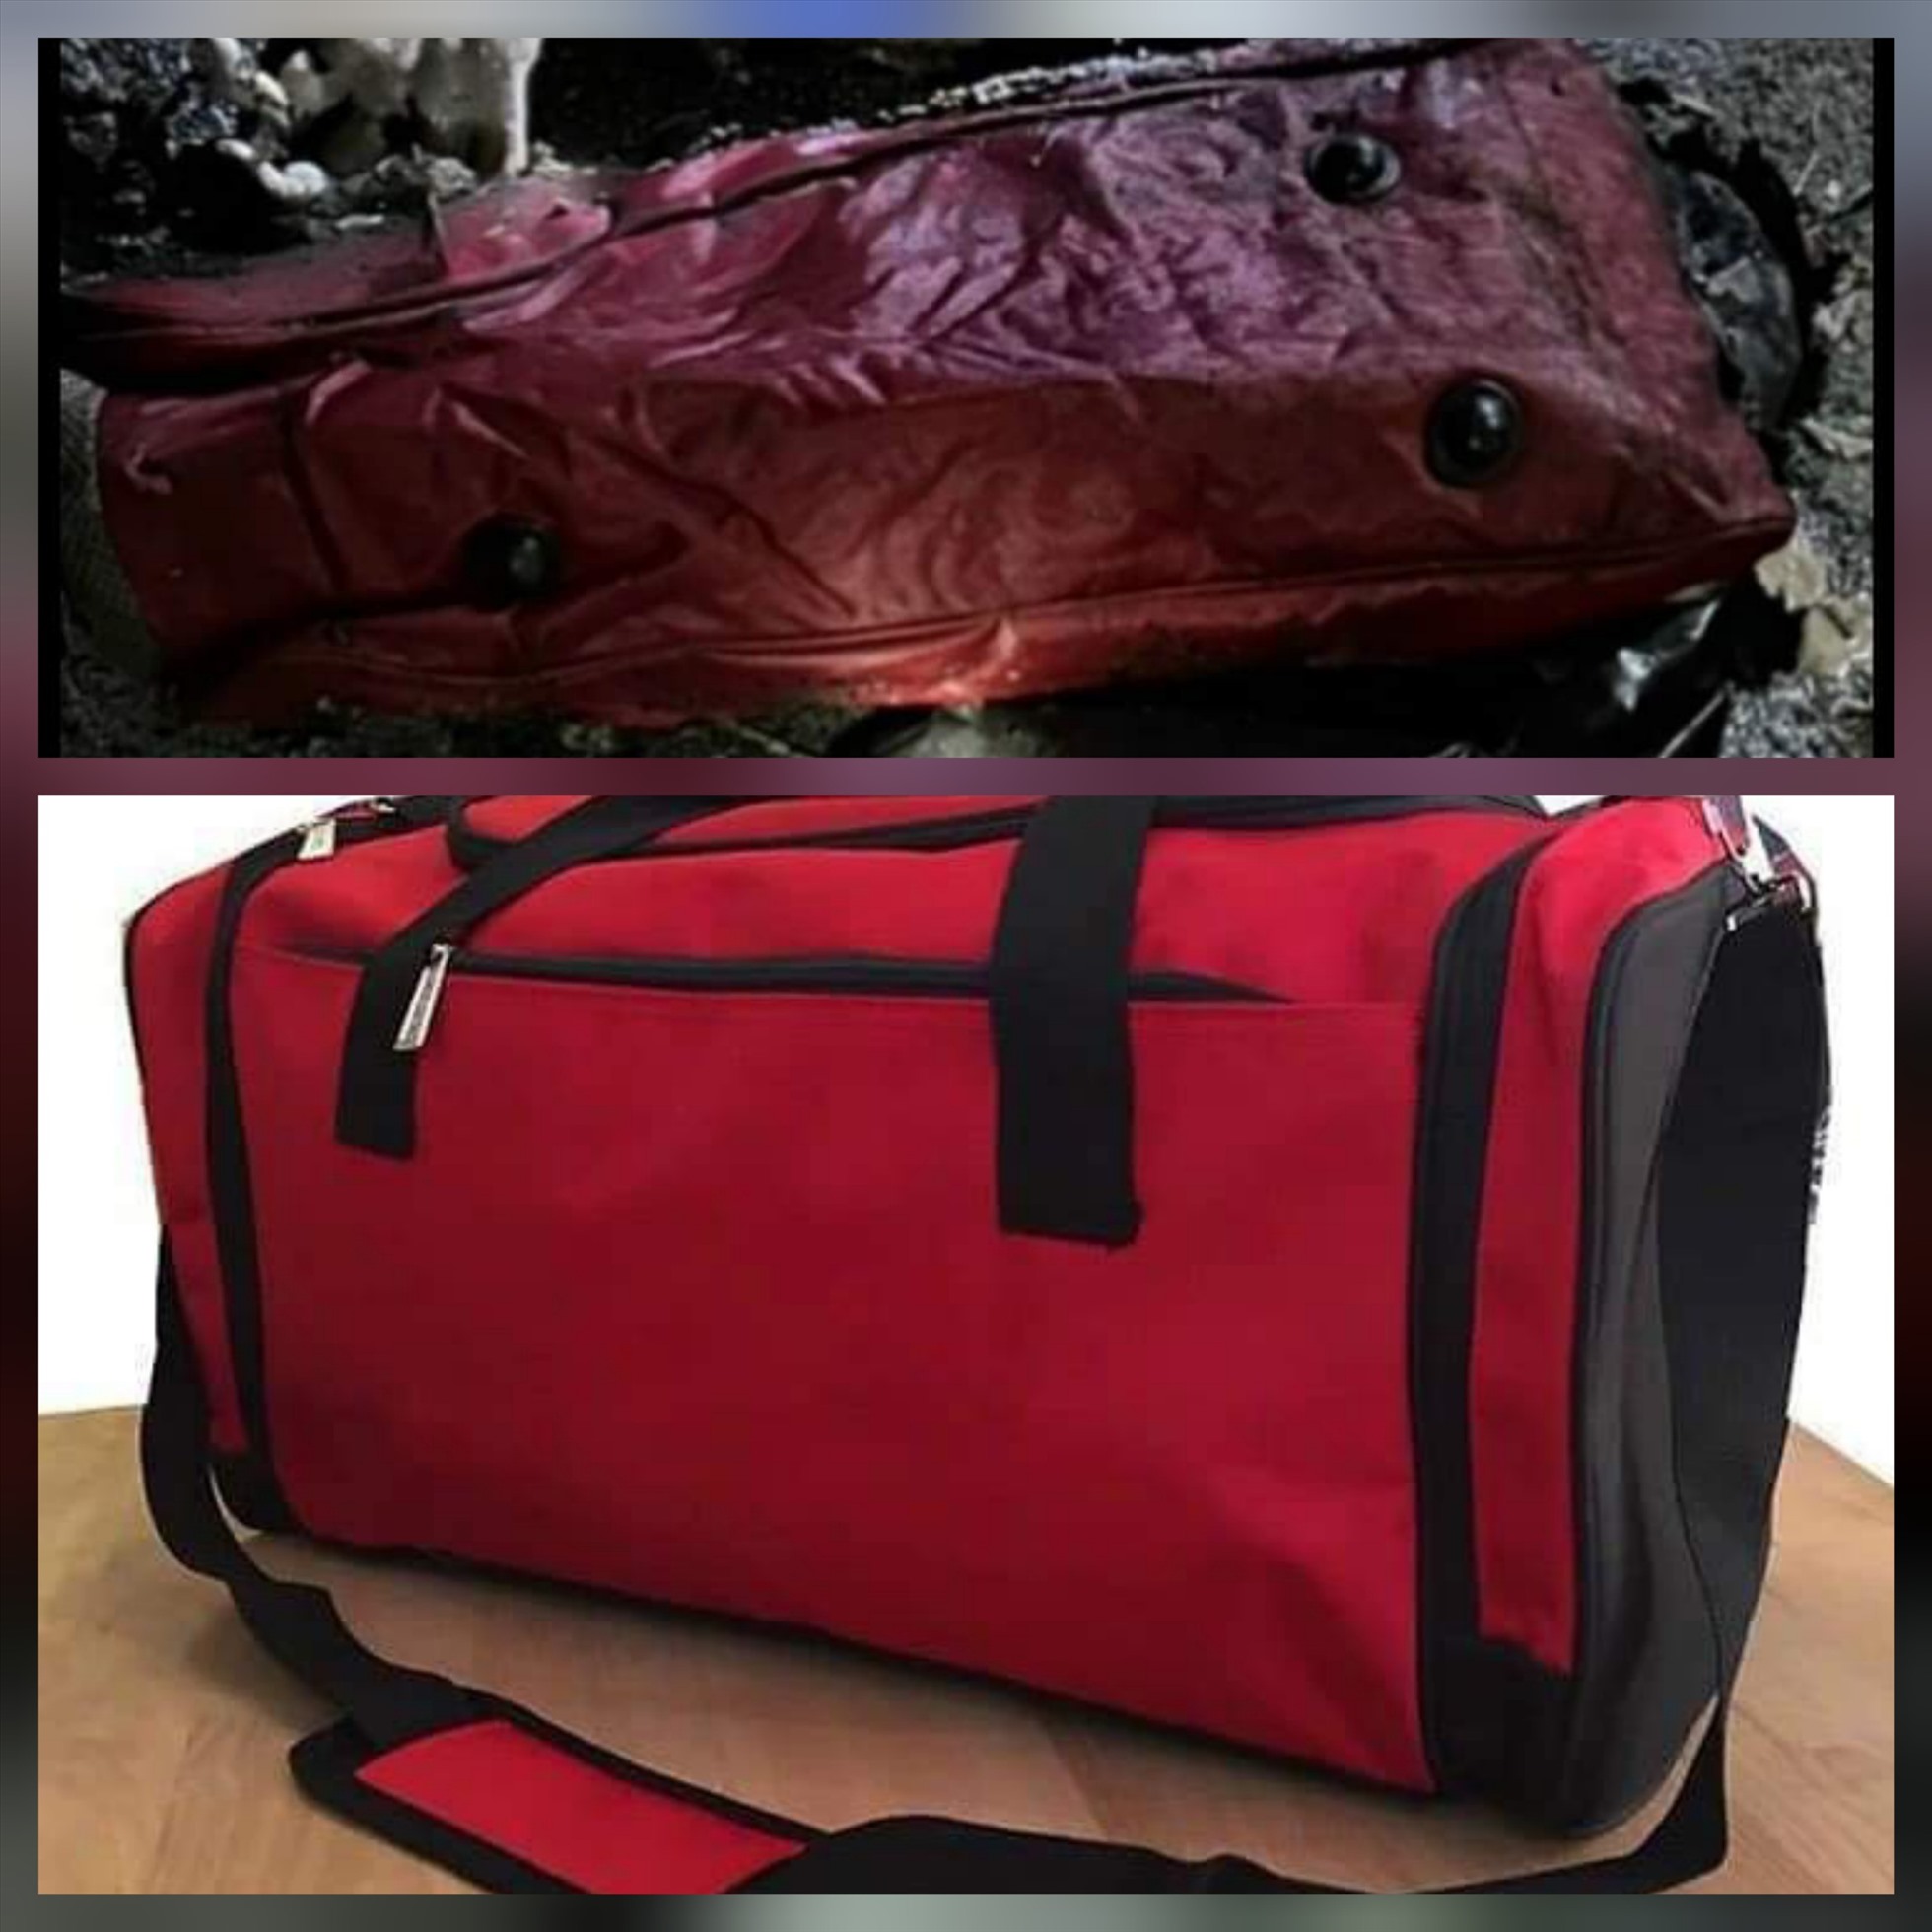 Công an cung cấp thêm manh mối mới là túi xách màu đỏ tại hiện trường bị cháy xém và mẫu túi tương tự còn mới. Ảnh: CACC